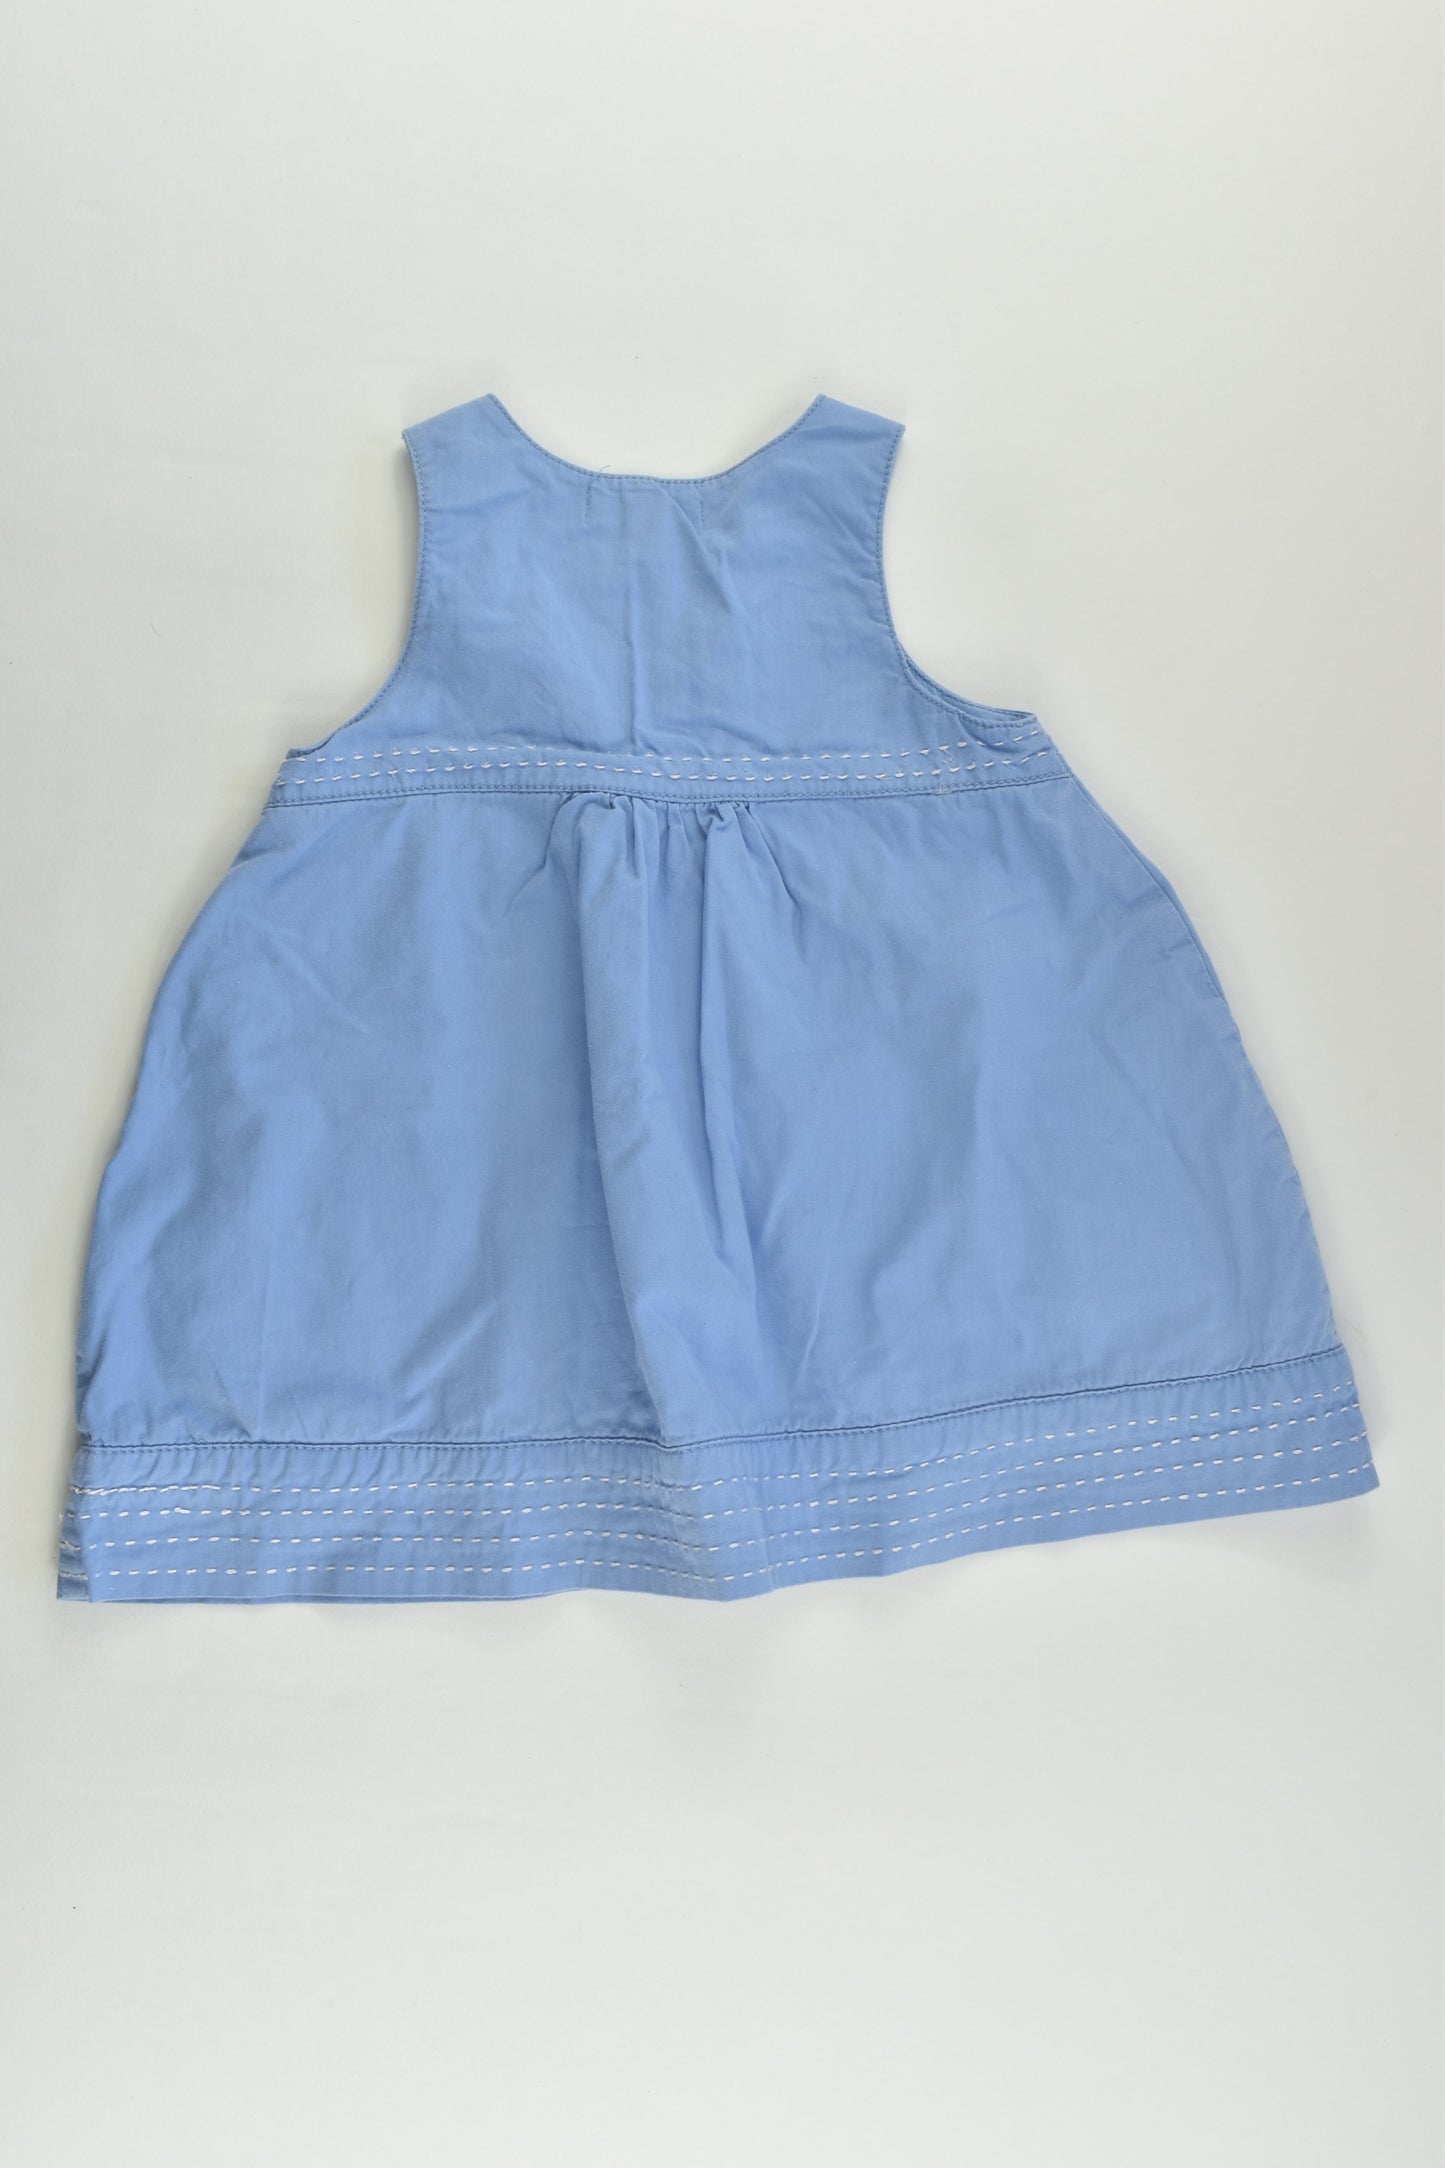 Pumpkin Patch Size 0 (6-12 months) Dress